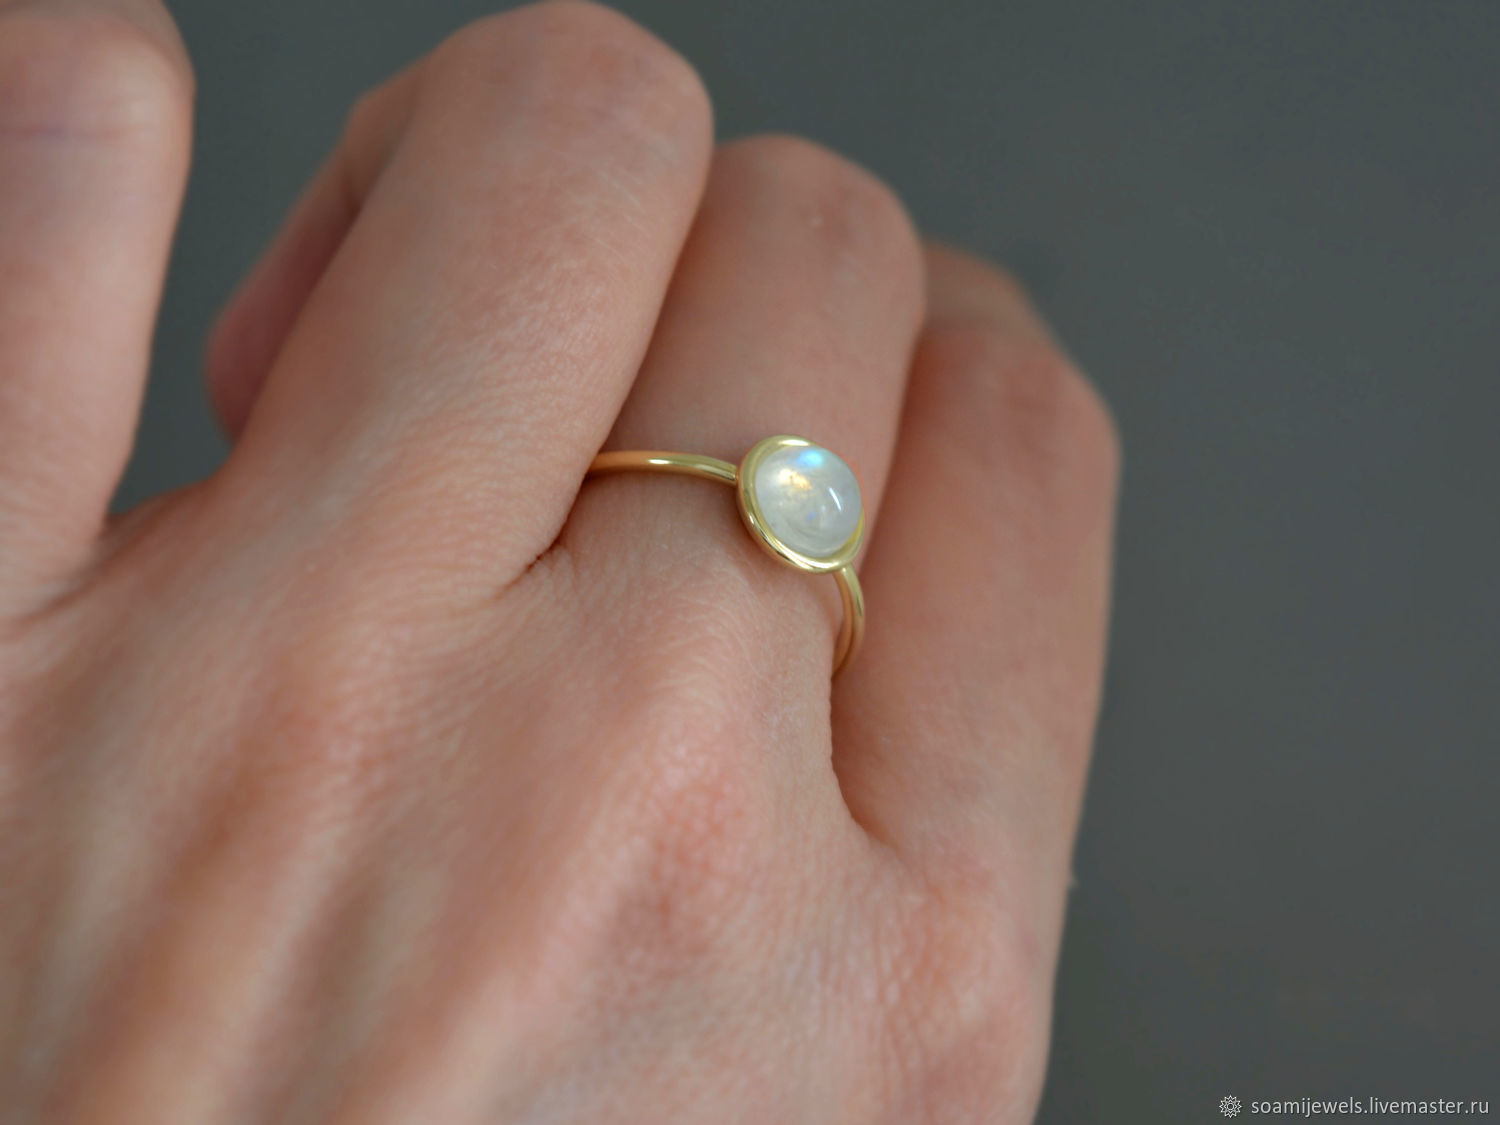 Кольца stone. Золотые кольца с лунным камнем 585. Кольцо Готланд с лунным камнем. Кольцо 585 с лунным камнем. Кольцо с маленьким овальным камнем.